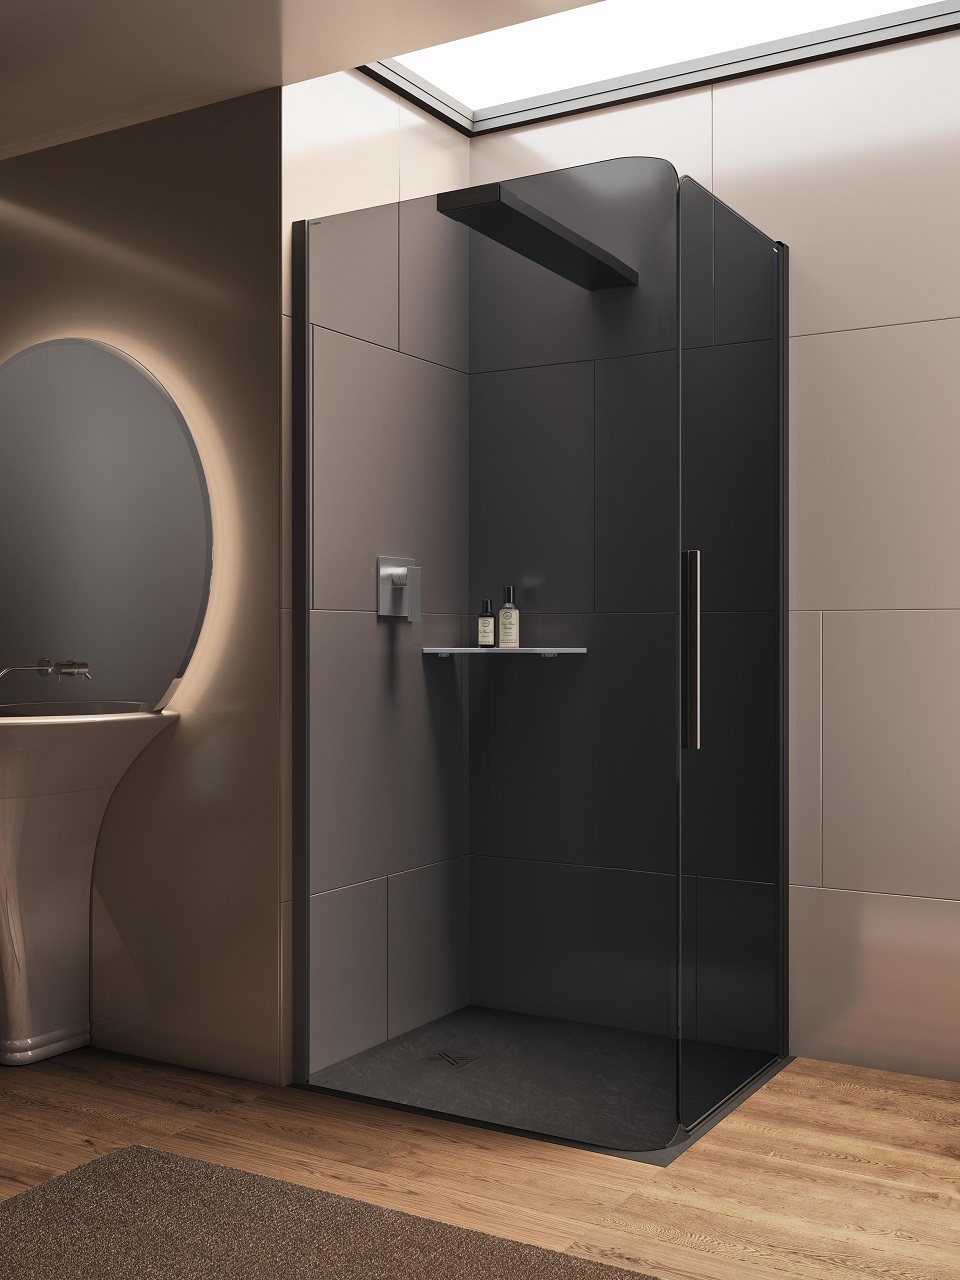 Bobox, l'innovativa cabina doccia componibile che rivoluziona il benessere in bagno B 3 red